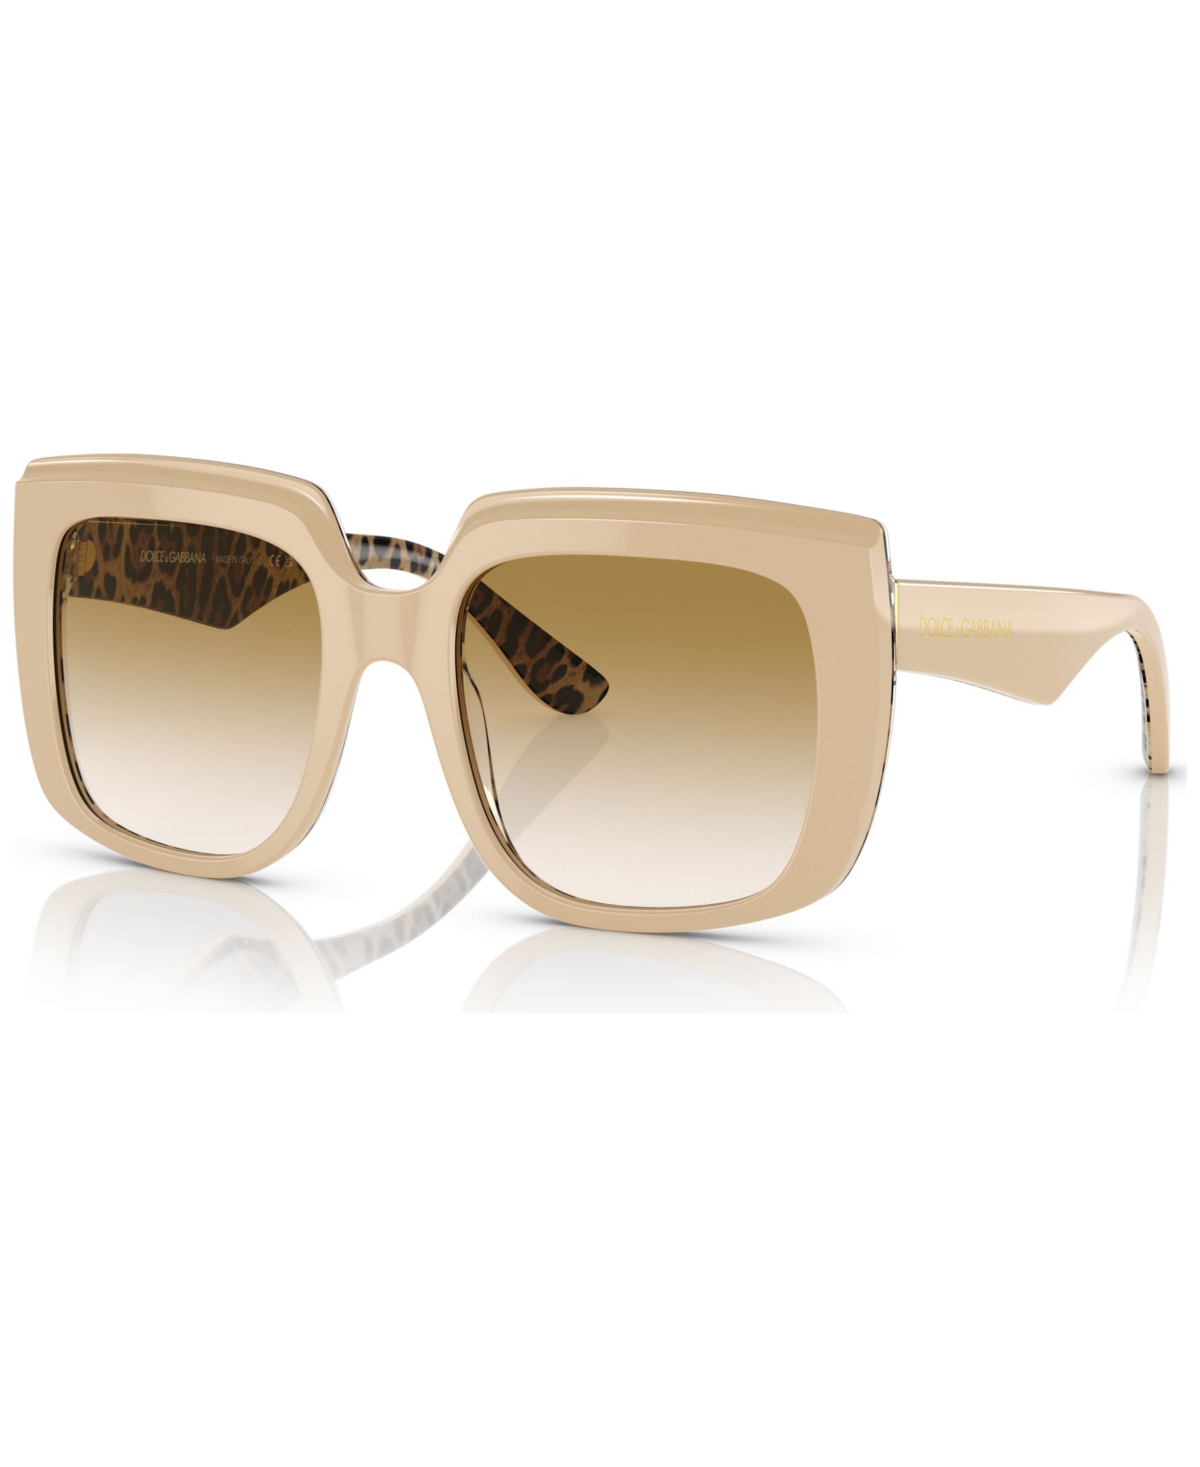 Dolce&Gabbana Women's Sunglasses, DG4414 - White Leo